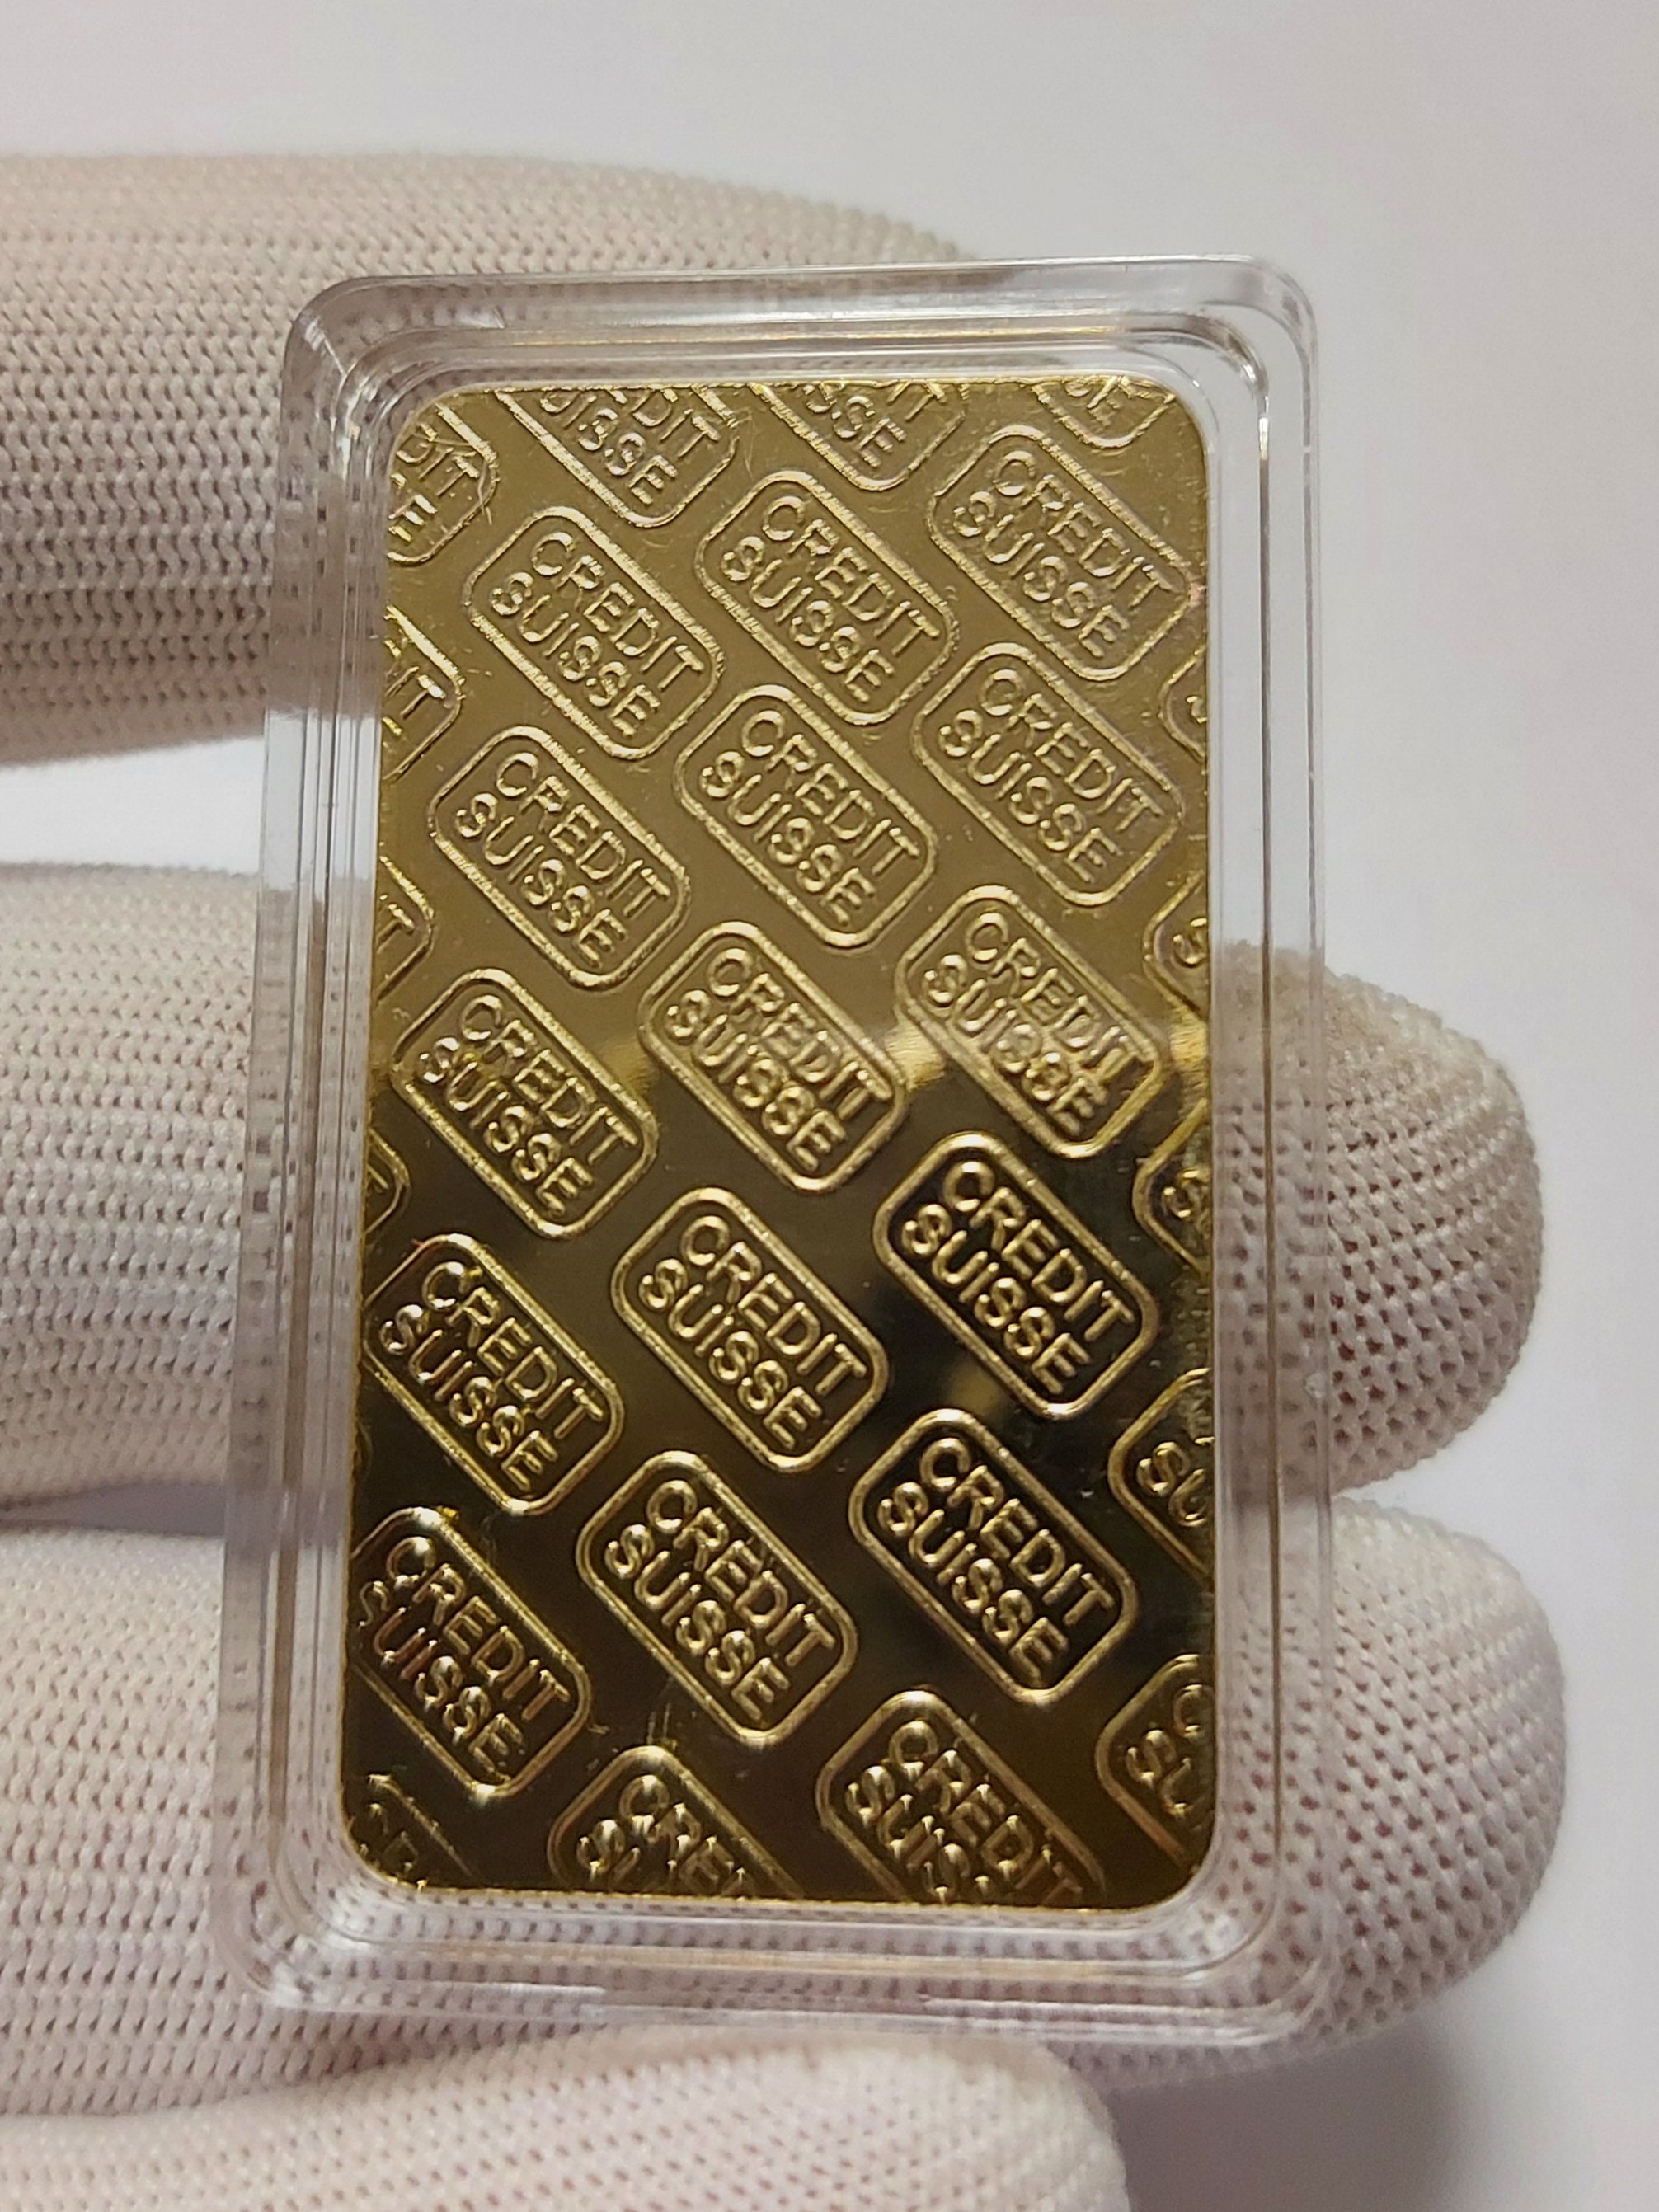 1 Oz Gold Bar - Etsy UK